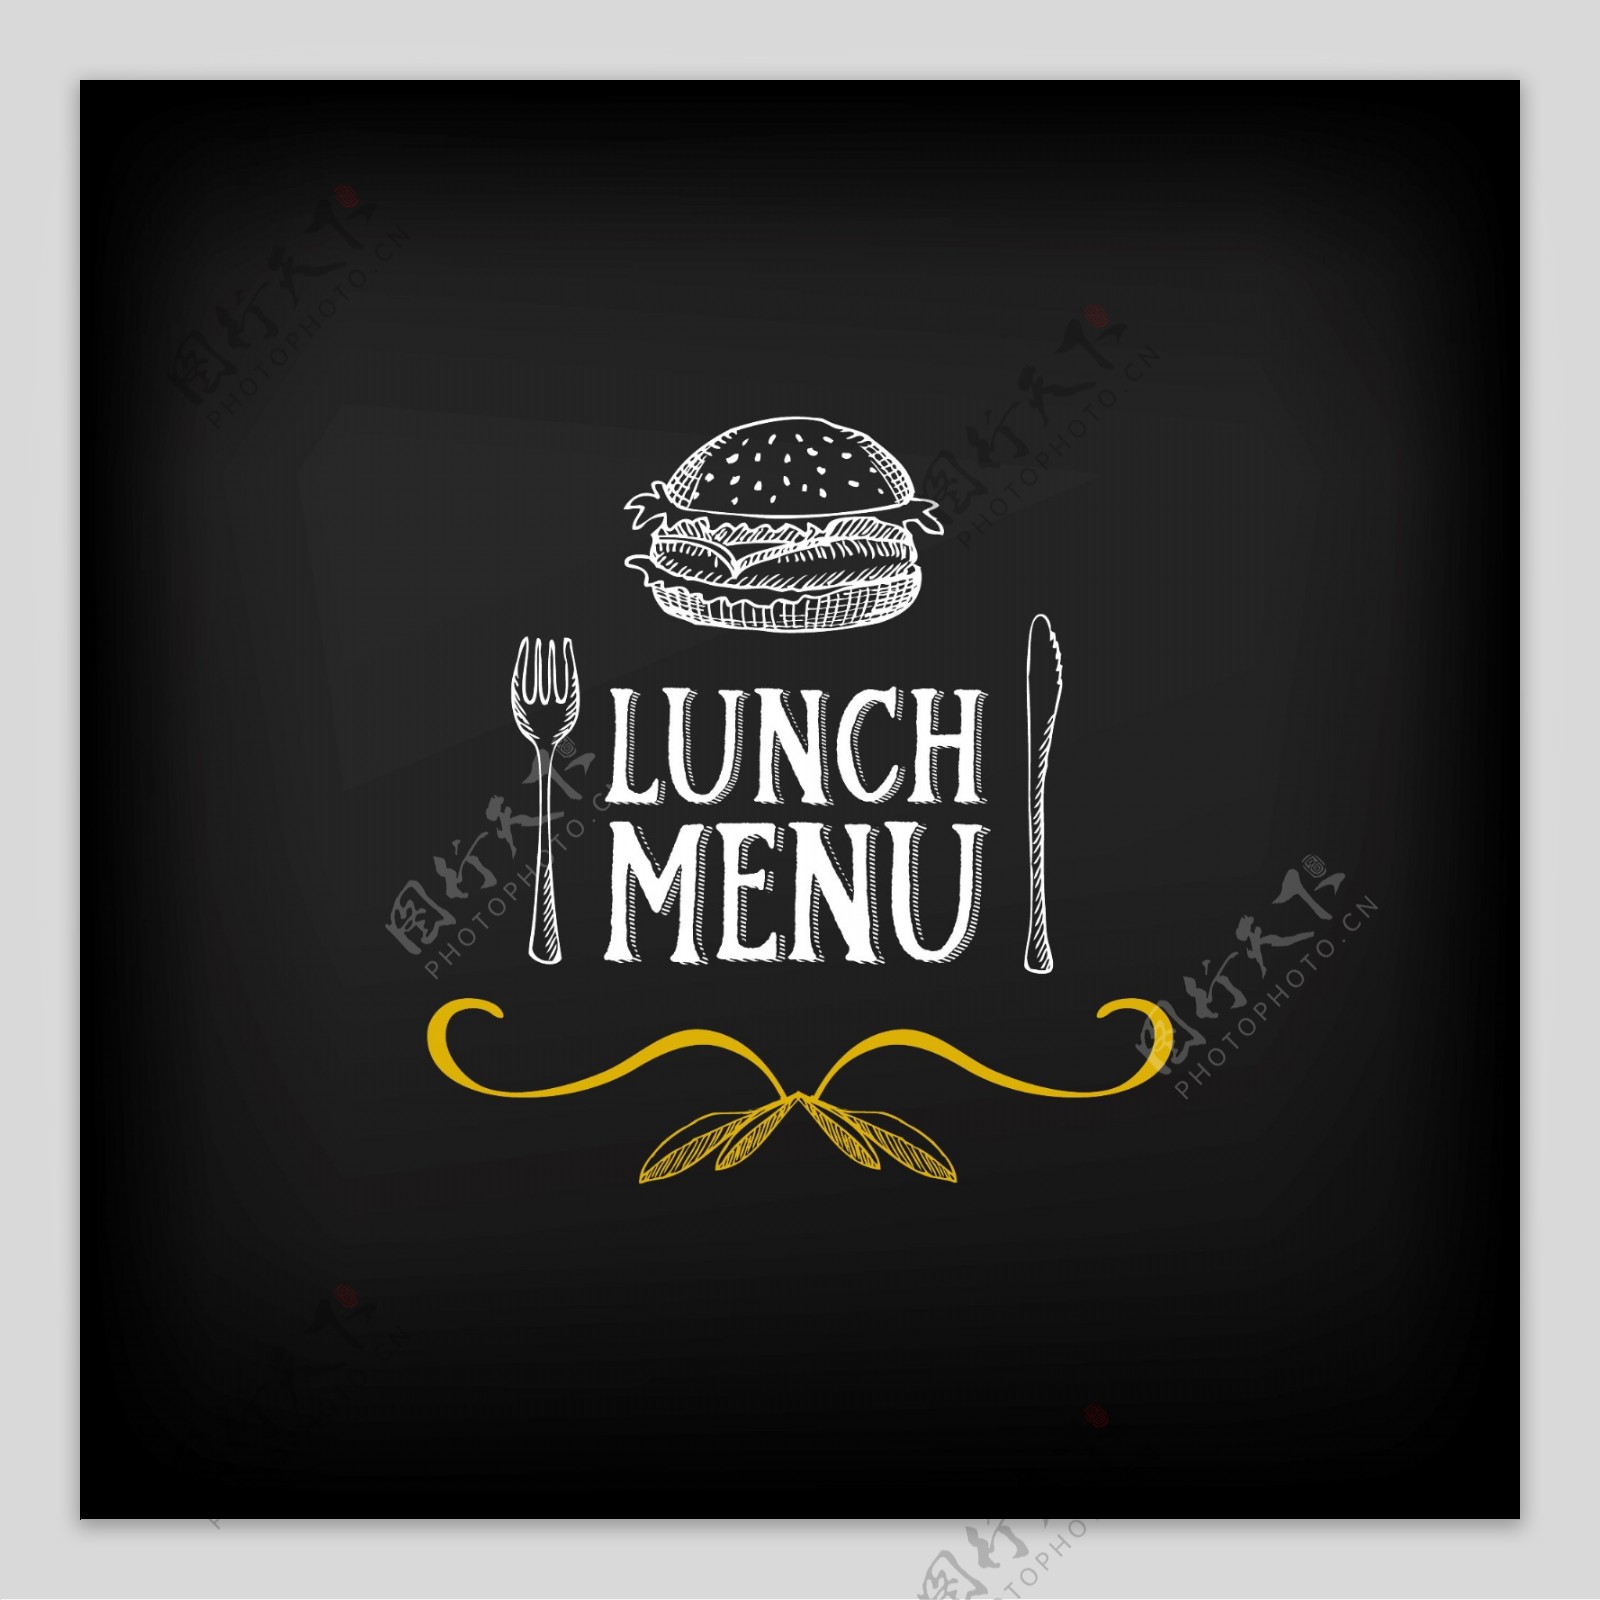 西餐午餐菜单标志Logo矢量